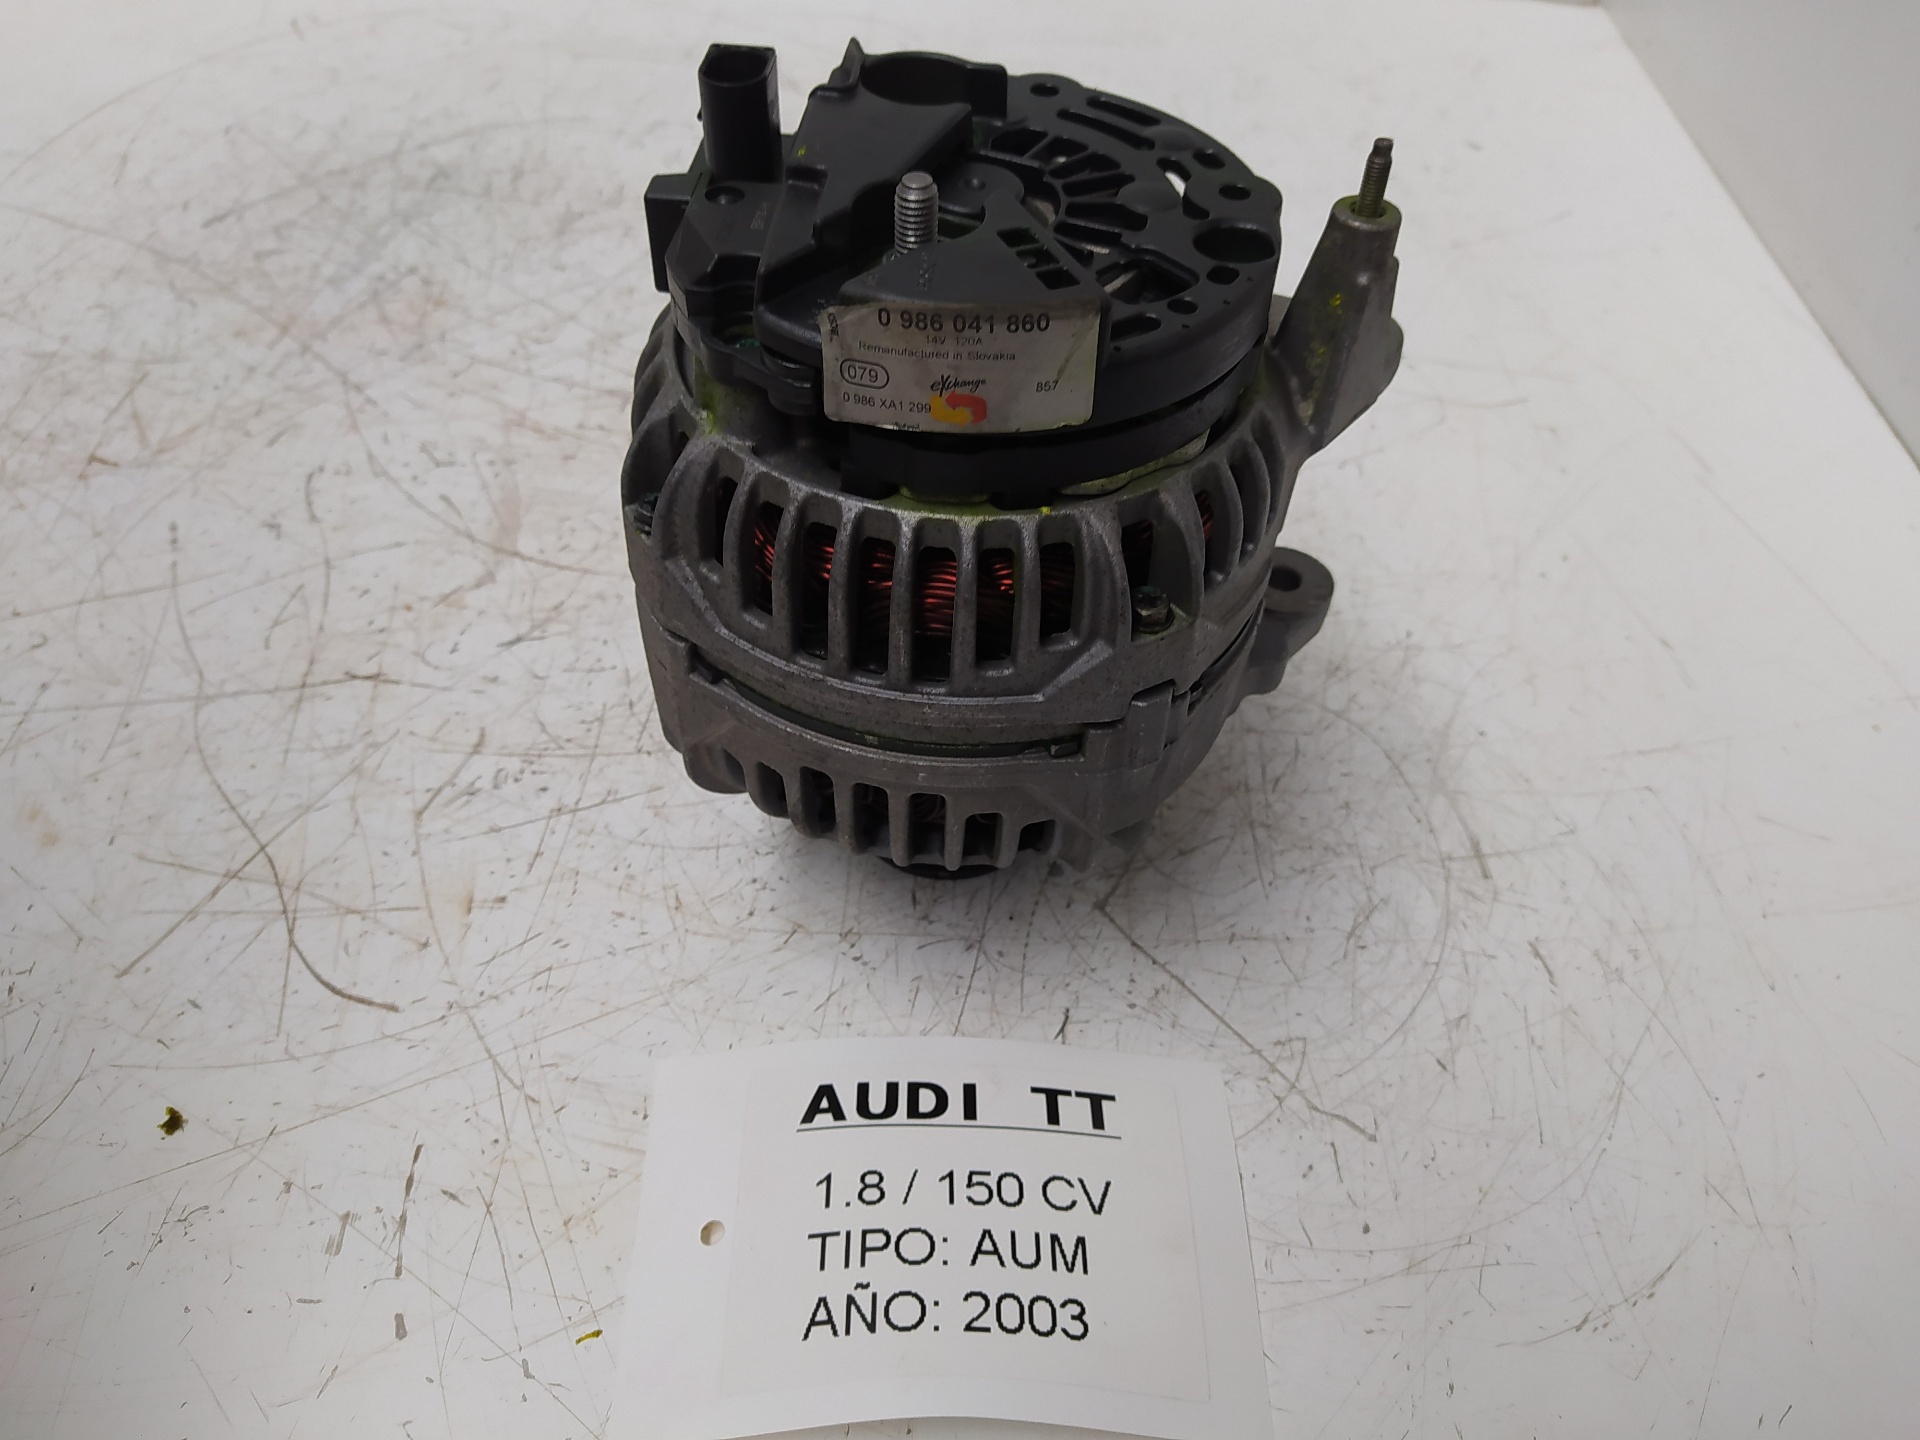 AUDI TT 8N (1998-2006) Alternator 0986041860, 0986XA1299 22887305